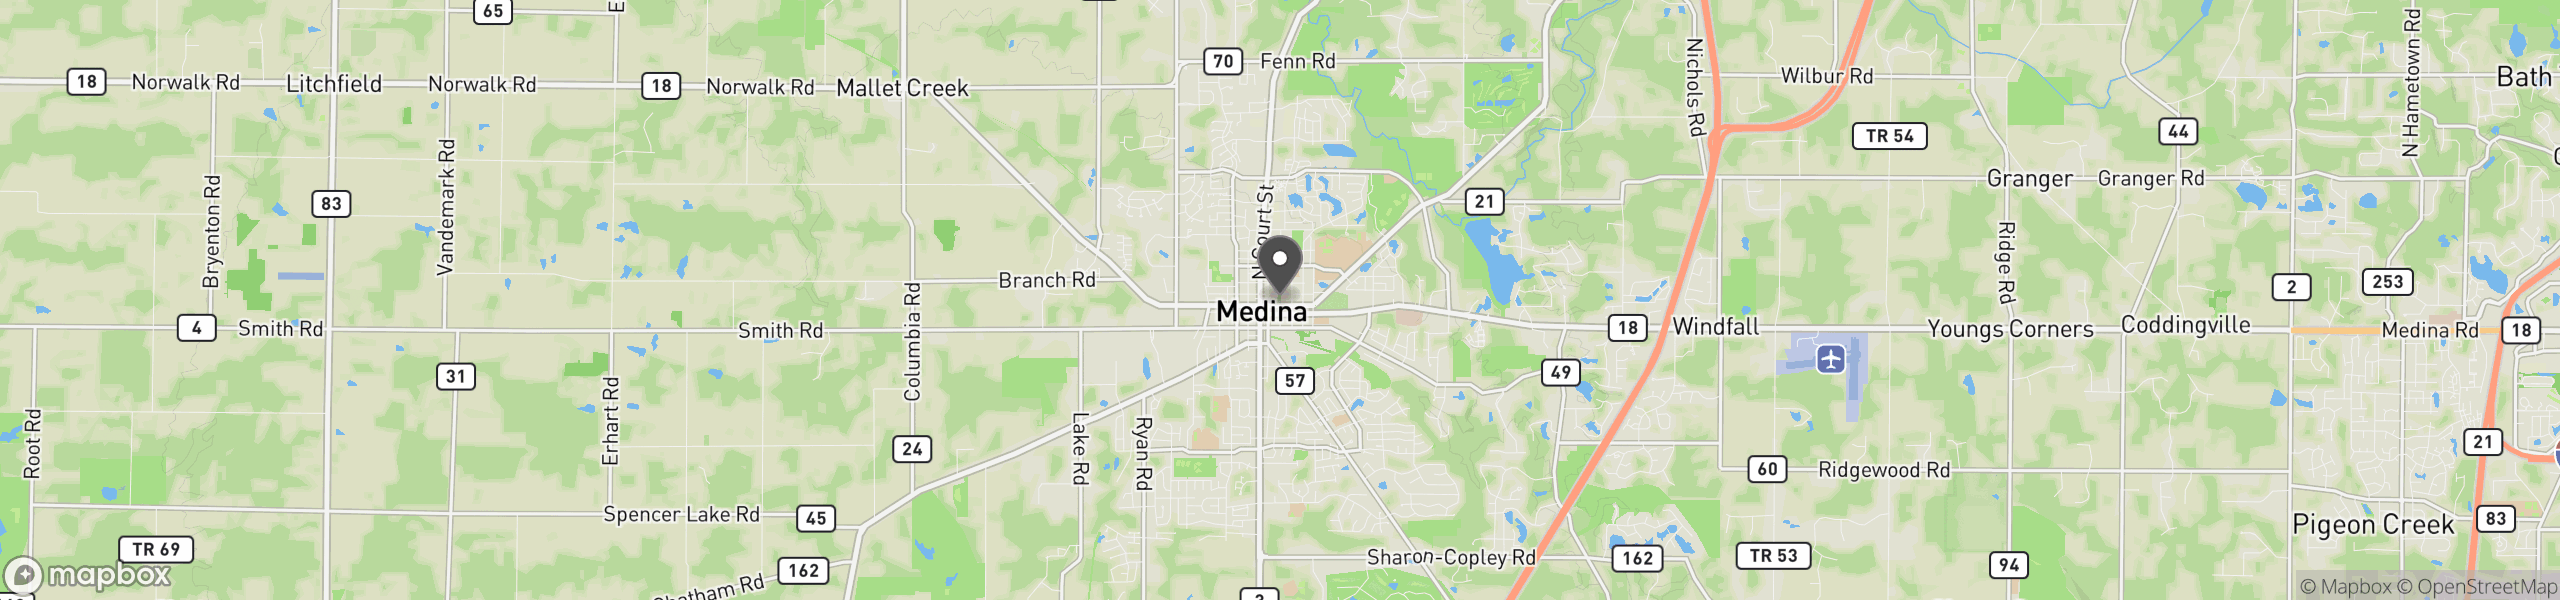 Medina, OH 44256